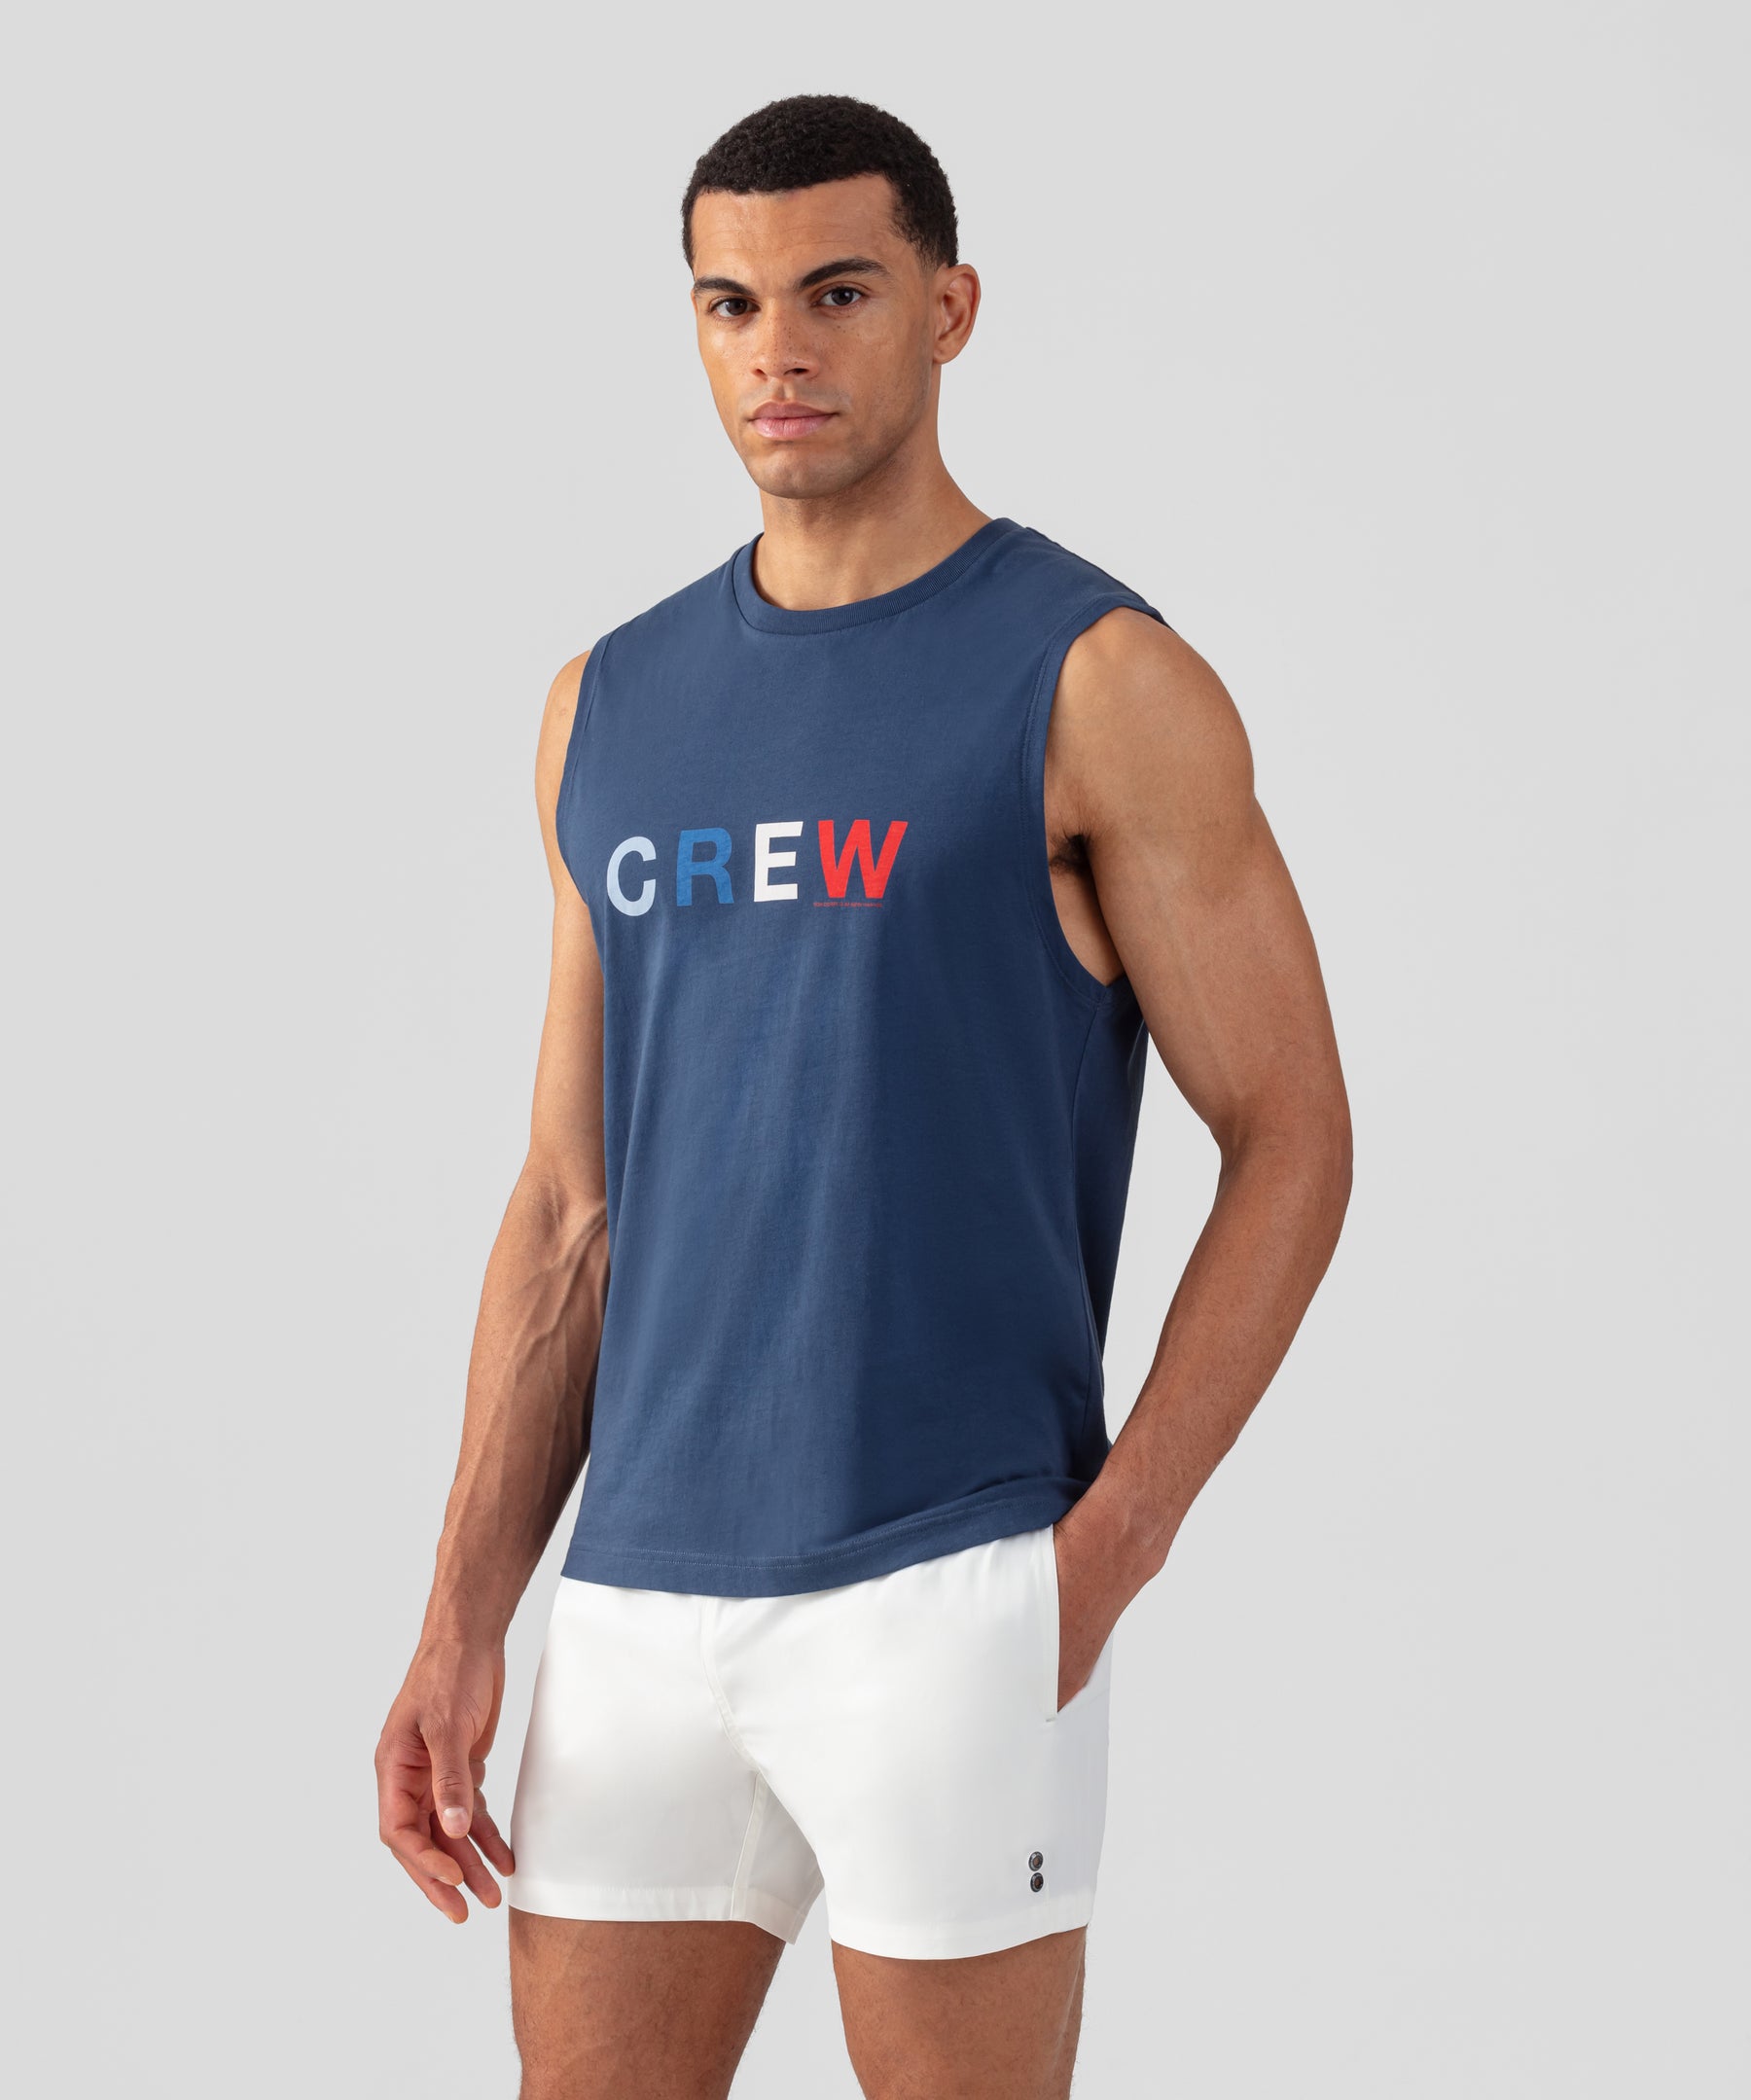 T-shirt sans manches en coton organique à imprimé CREW: Bleu foncé